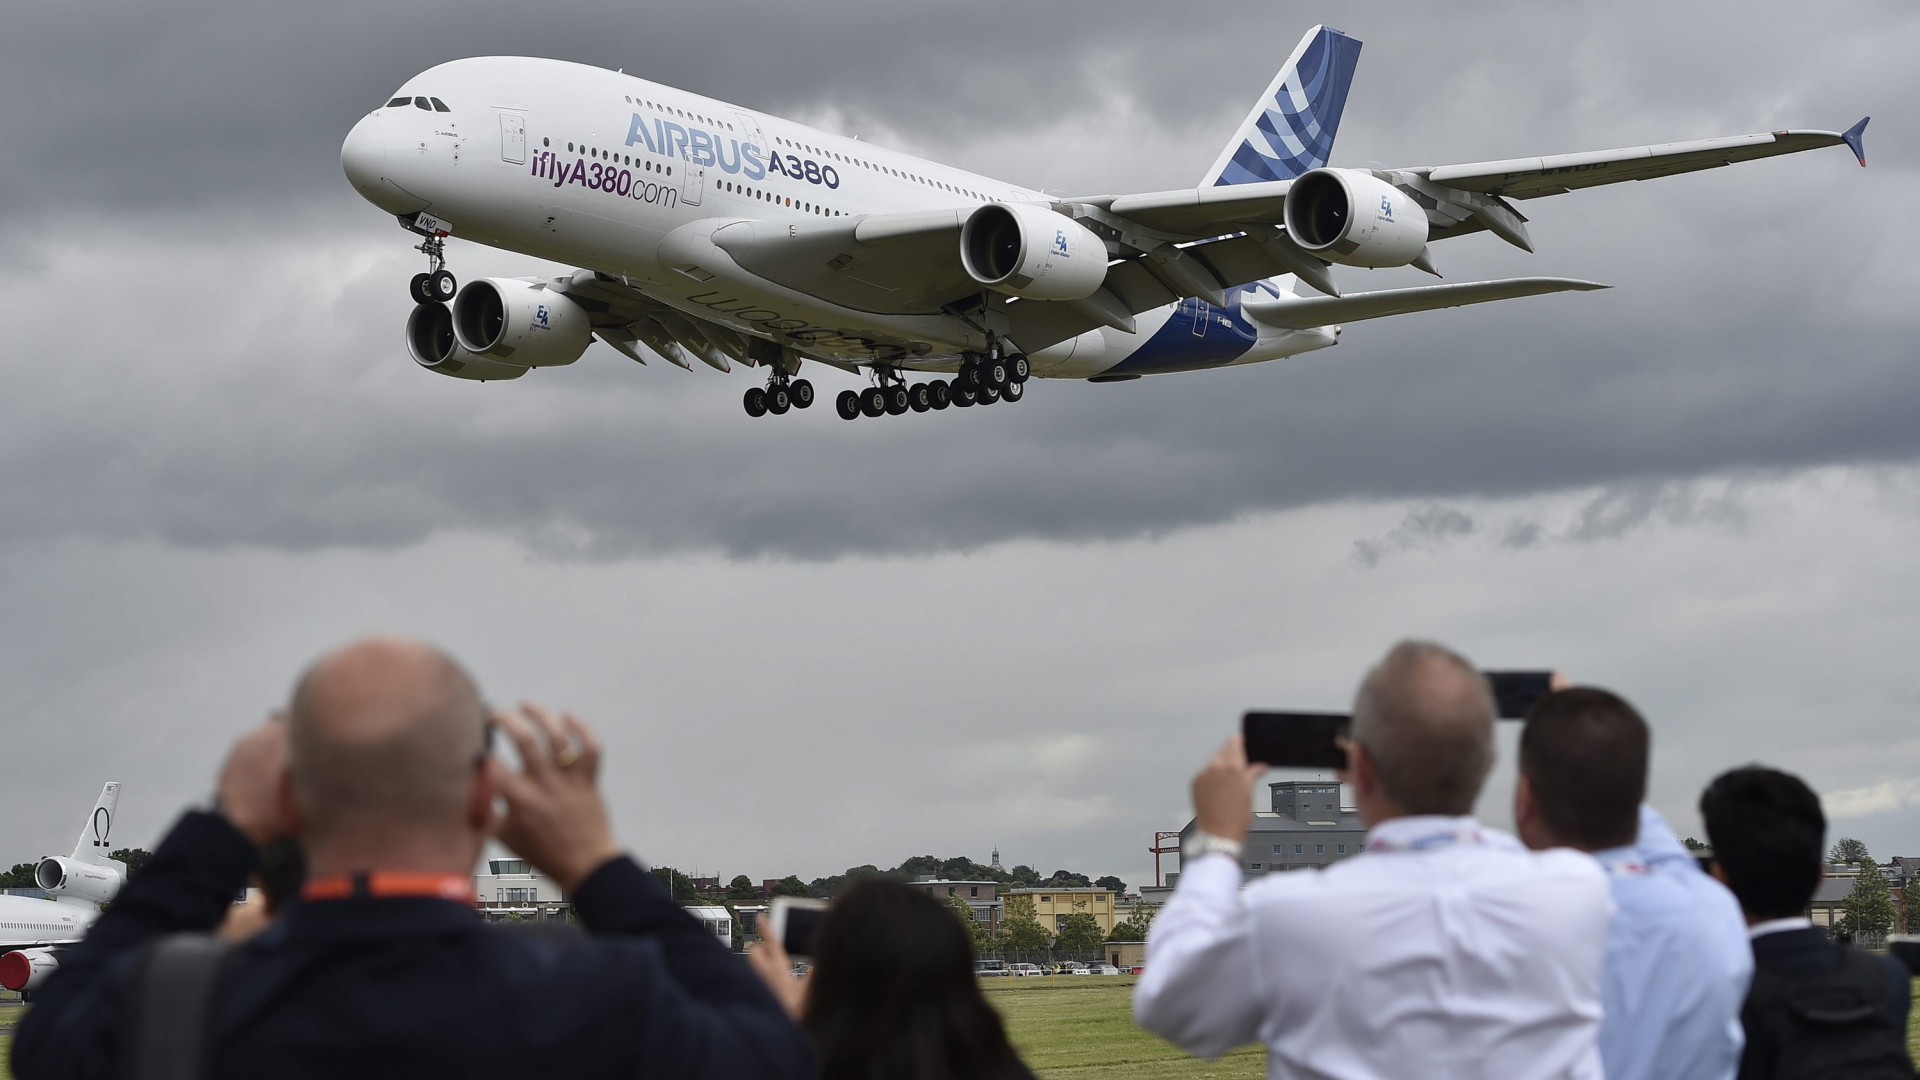 Zuschauer beobachten und filmen einen Airbus A380 bei der Farnborough International Airshow. (Juli 2016) | dpa